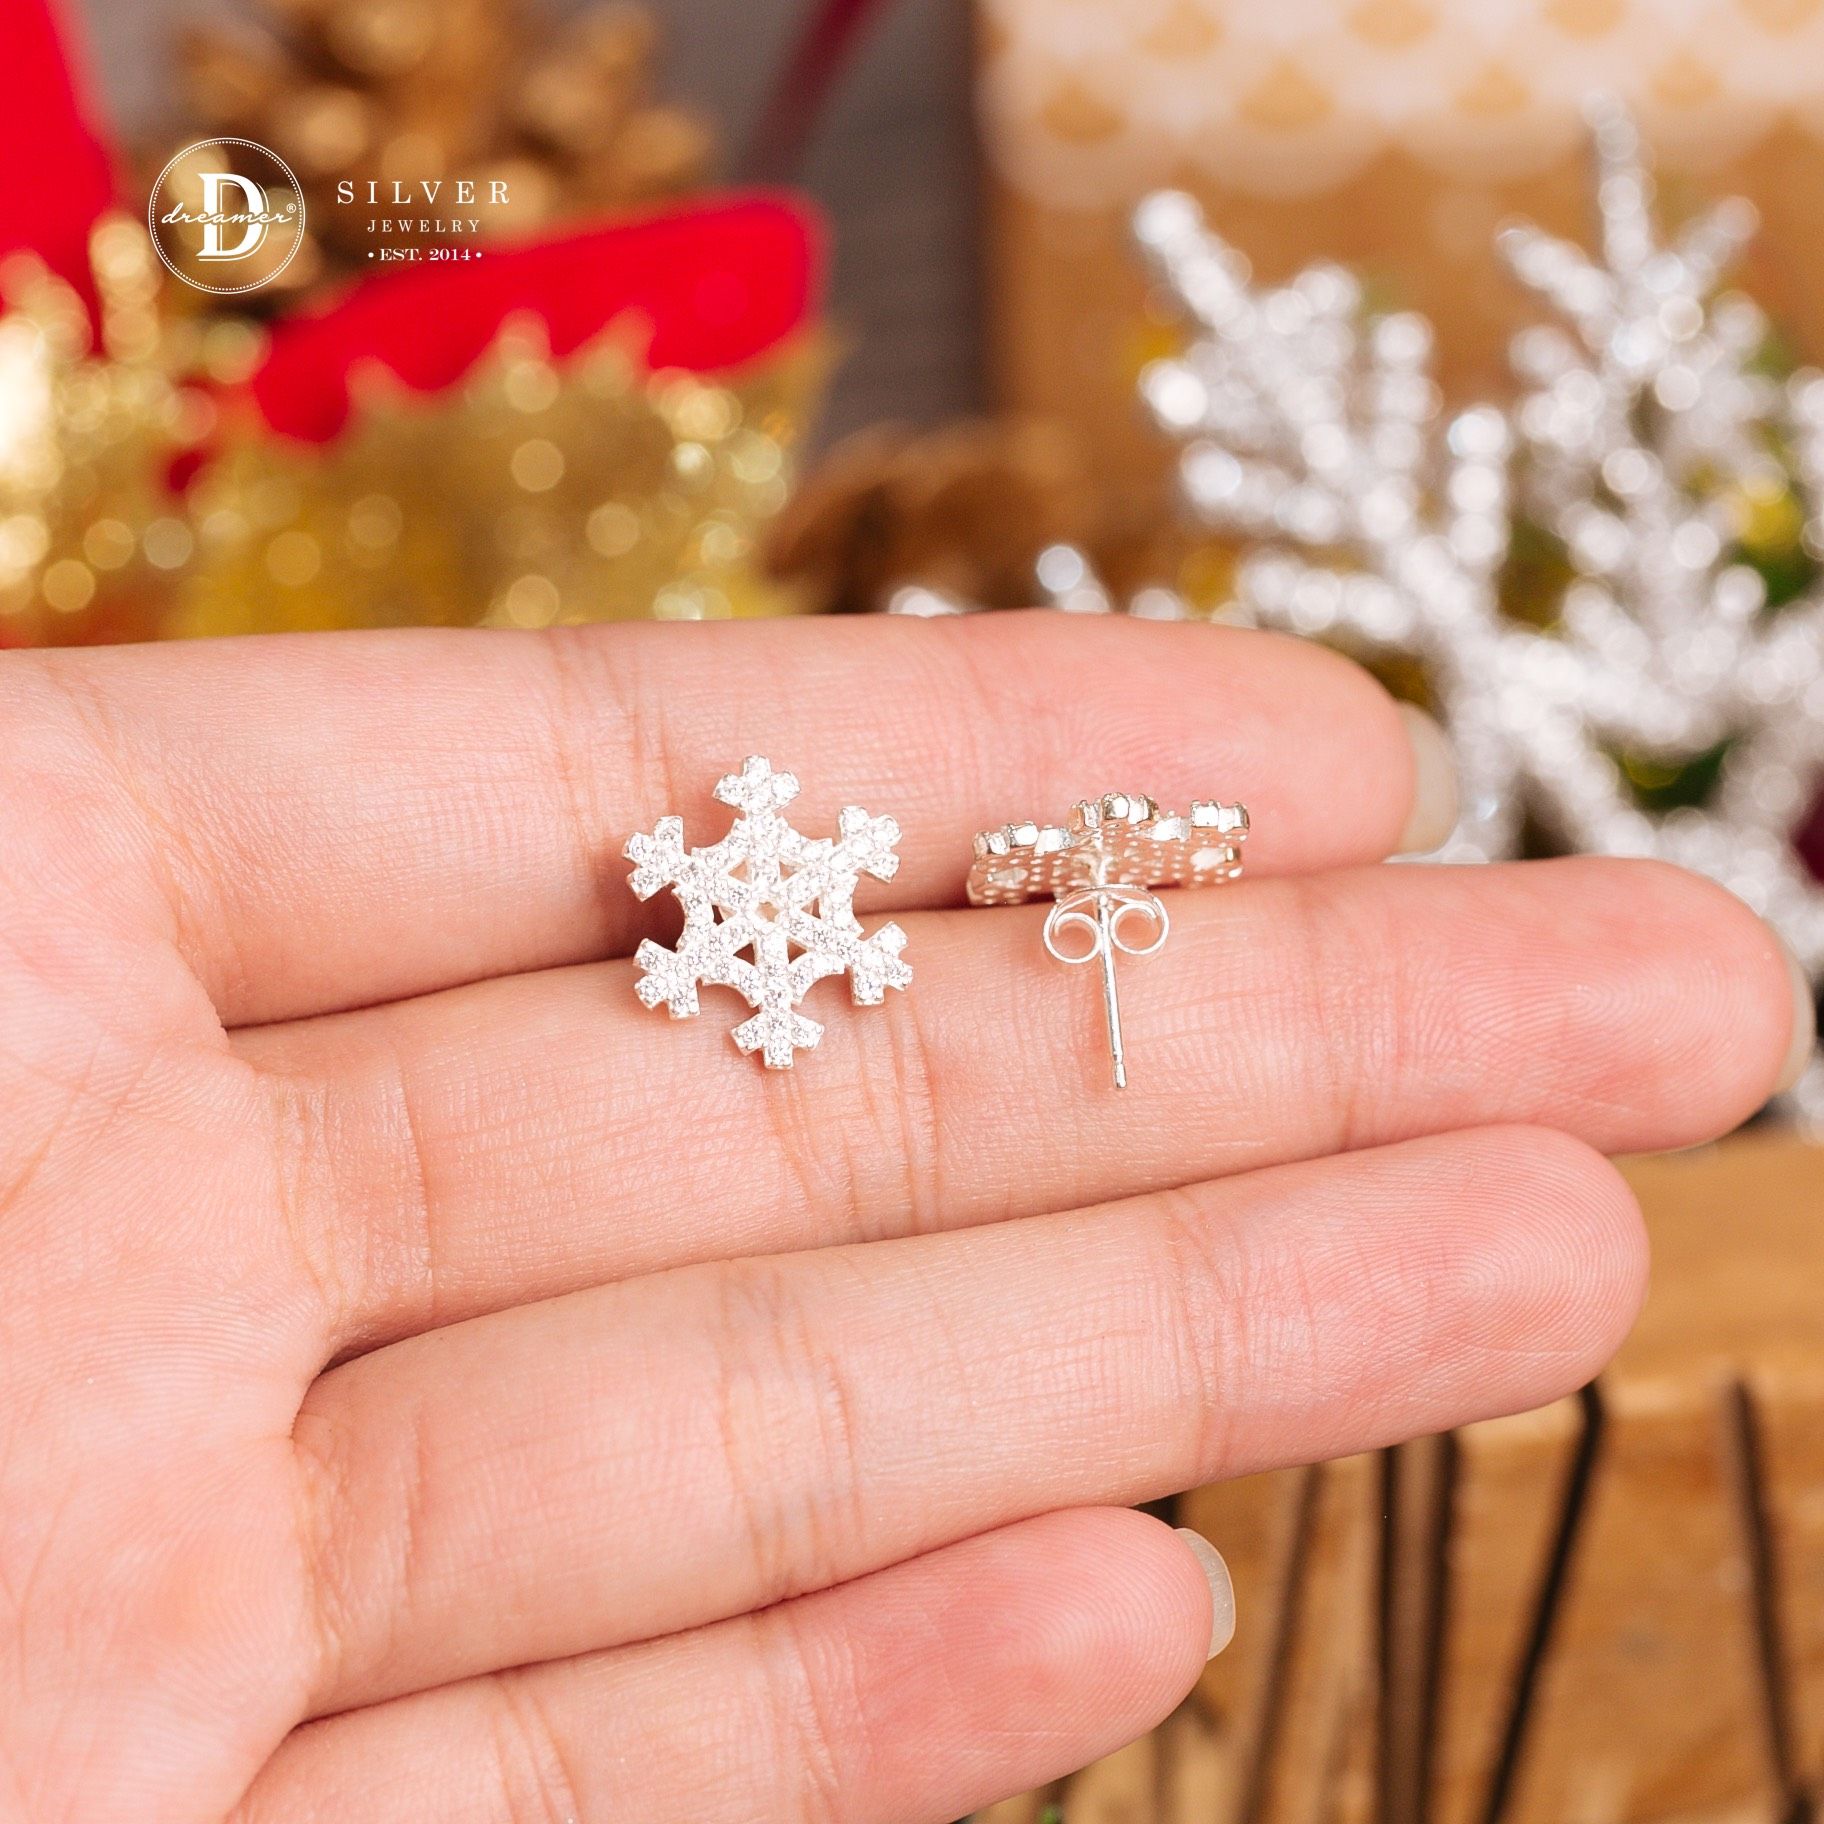  Snowflake Christmas Silver Earrings - Hoa Tai Nữ Bạc 925 Hình Hoa Tuyết - Quà Tặng Giáng Sinh 129BTH 896BTH 